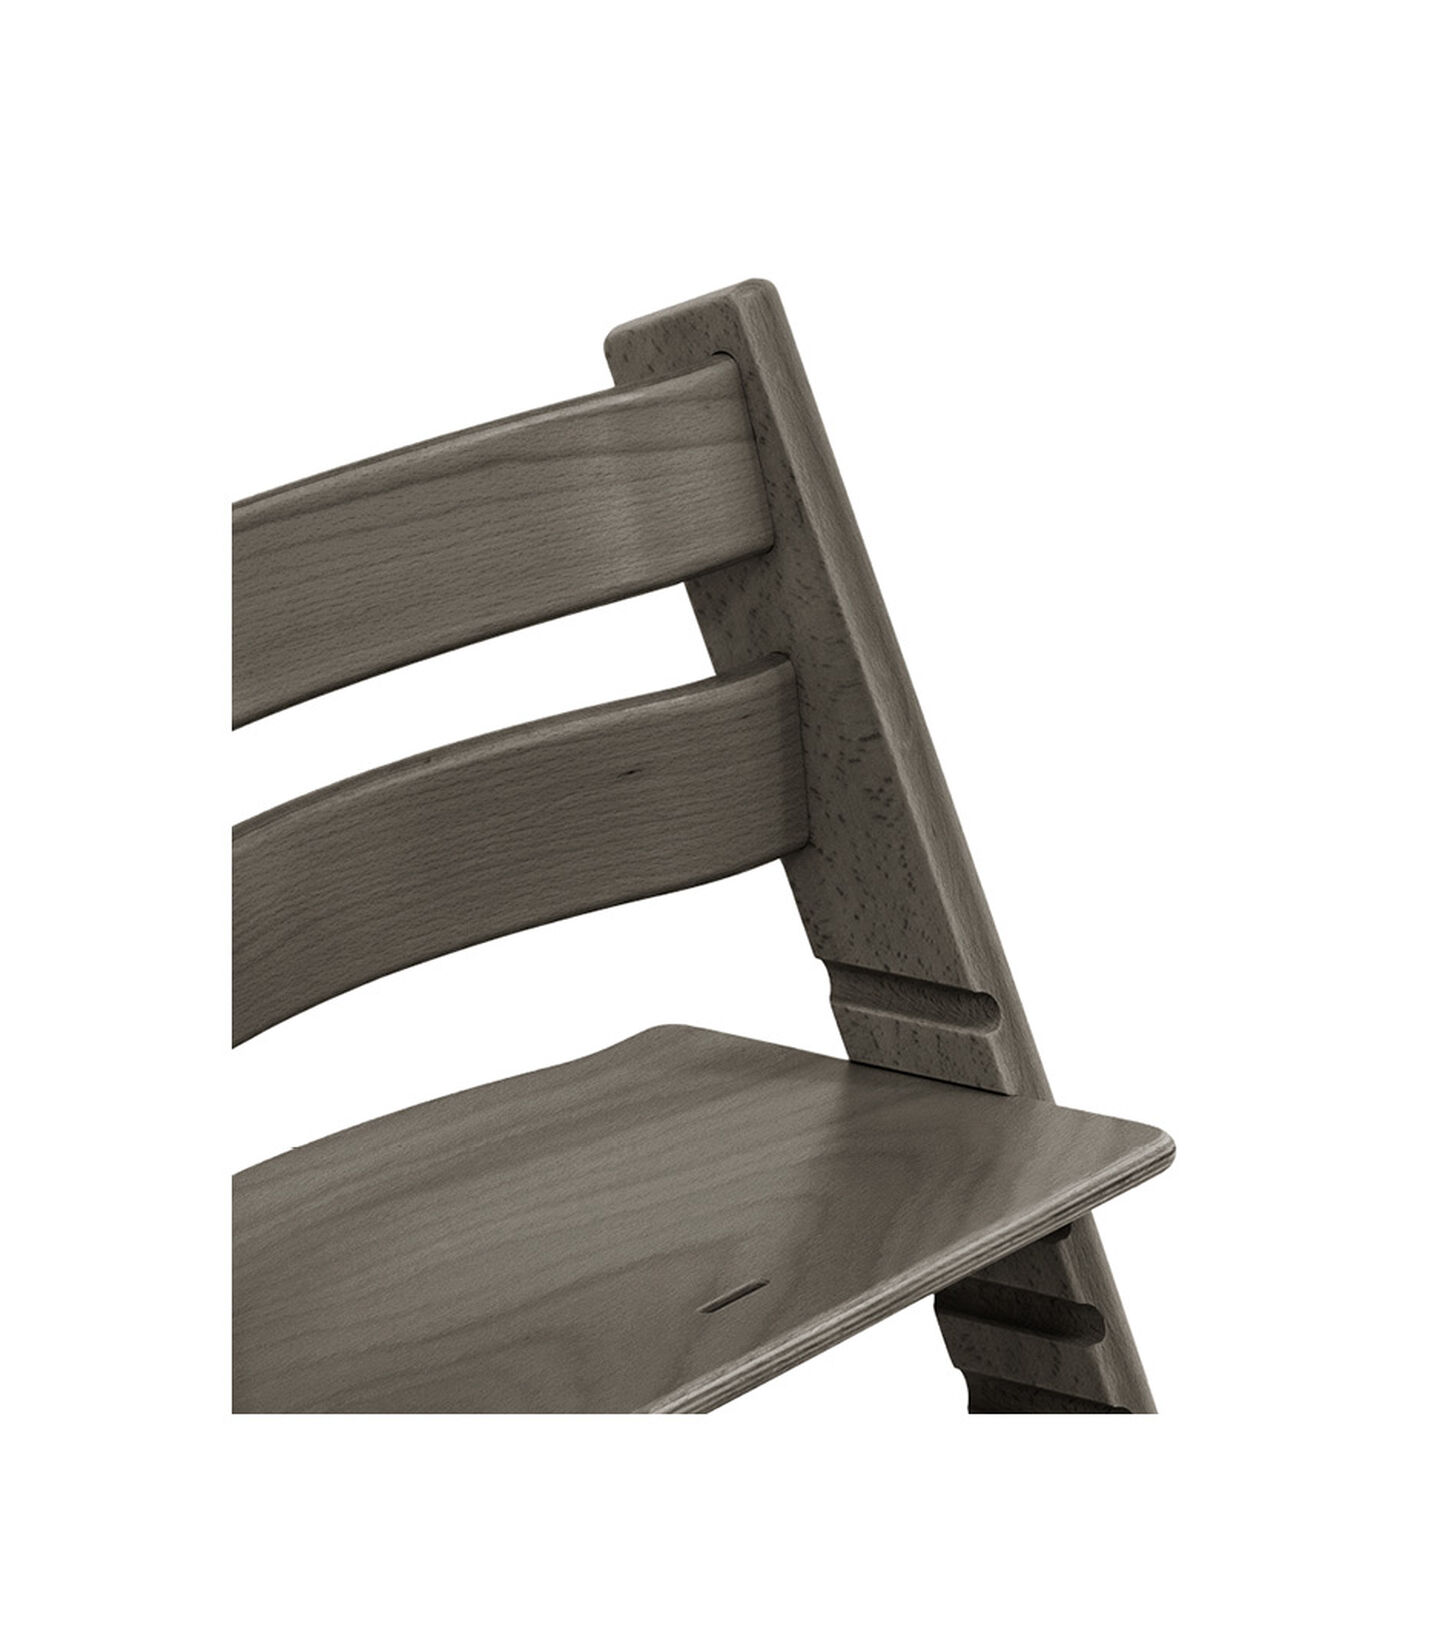 Tripp Trapp® Chair Hazy Grey, Hazy Grey, mainview view 3